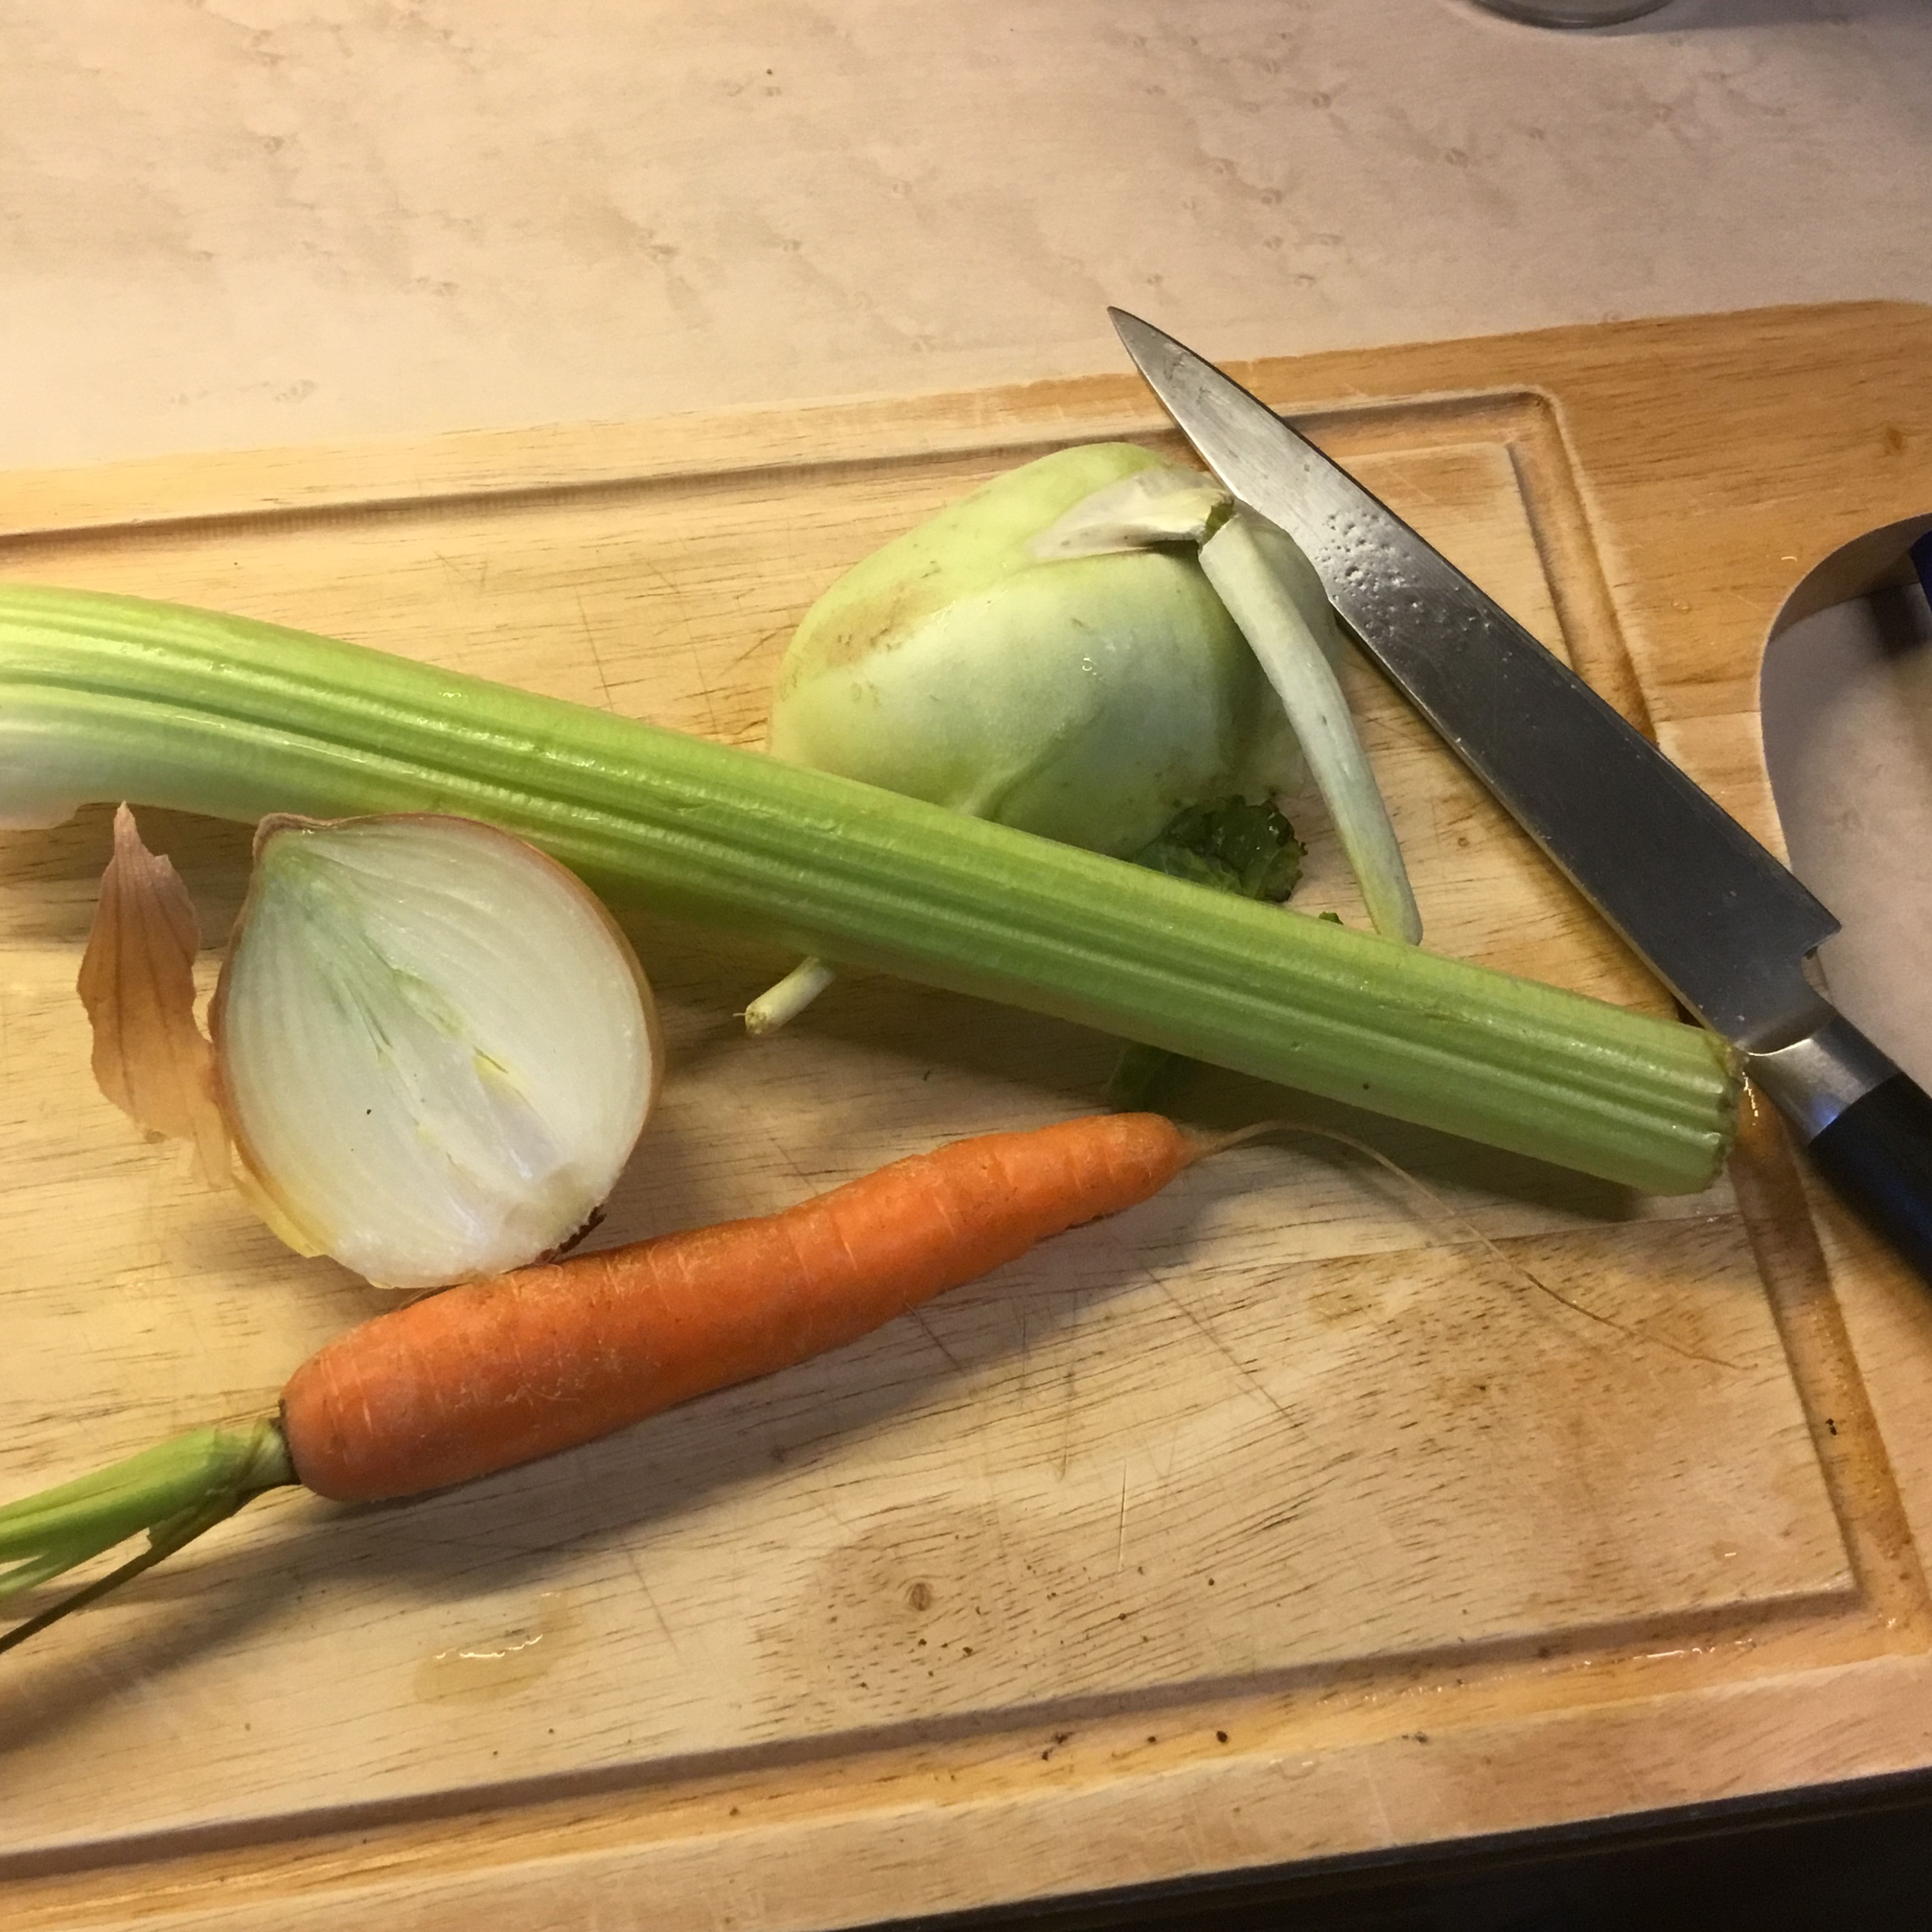 Jetzt ist Zeit für ein kleines "Gemüsebett" wenn ich die Gänsebrust nach 1 1/2 h umdrehe. Zwiebel, Kohlrabi, Staudensellerie und Karotte putzen...